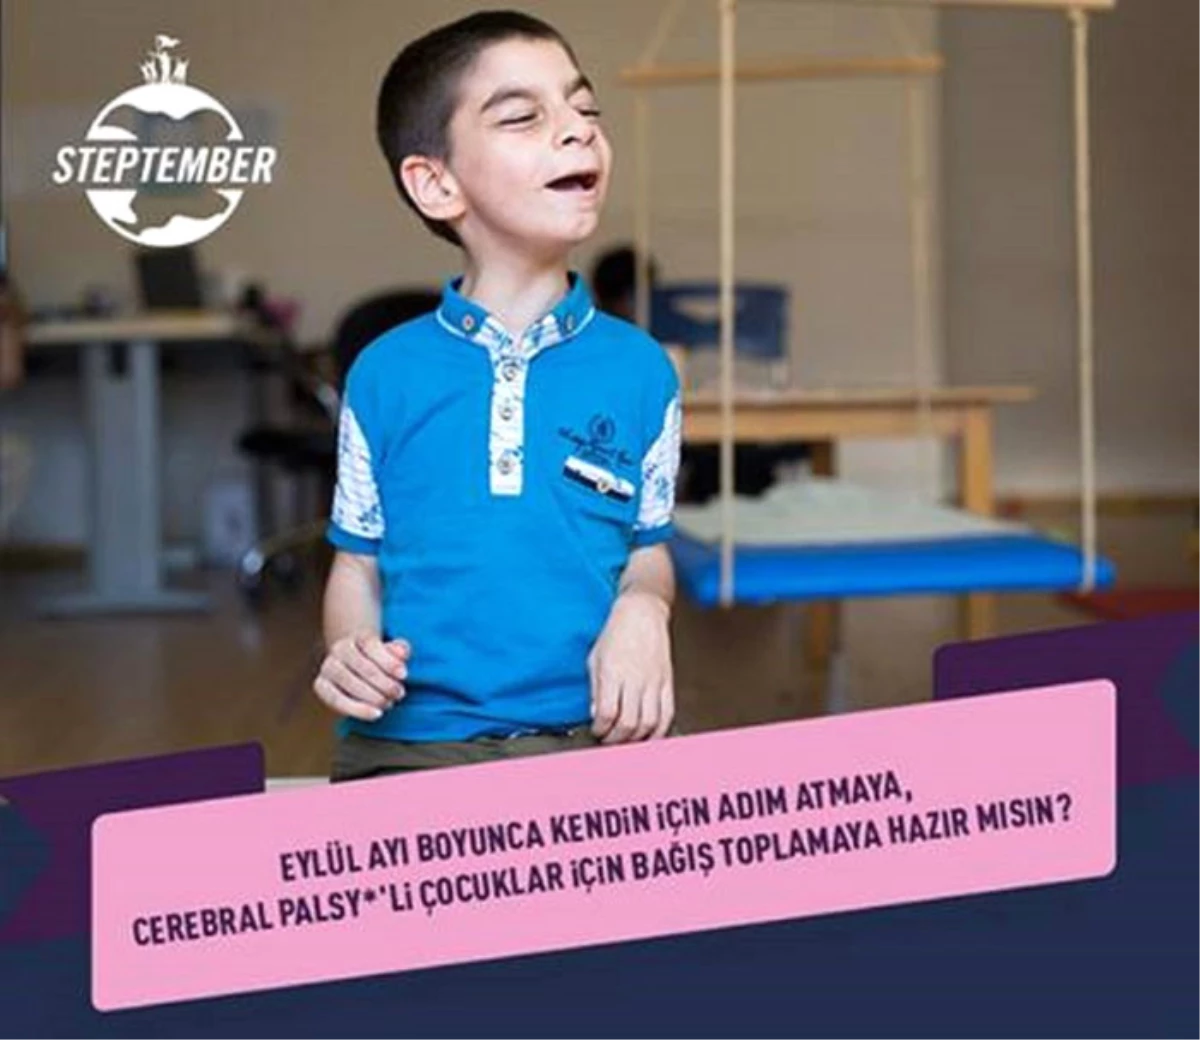 Cerebral Palsy\'li Çocuklar İçin Eylül Ayı Boyunca Günde 10 Bin Adım